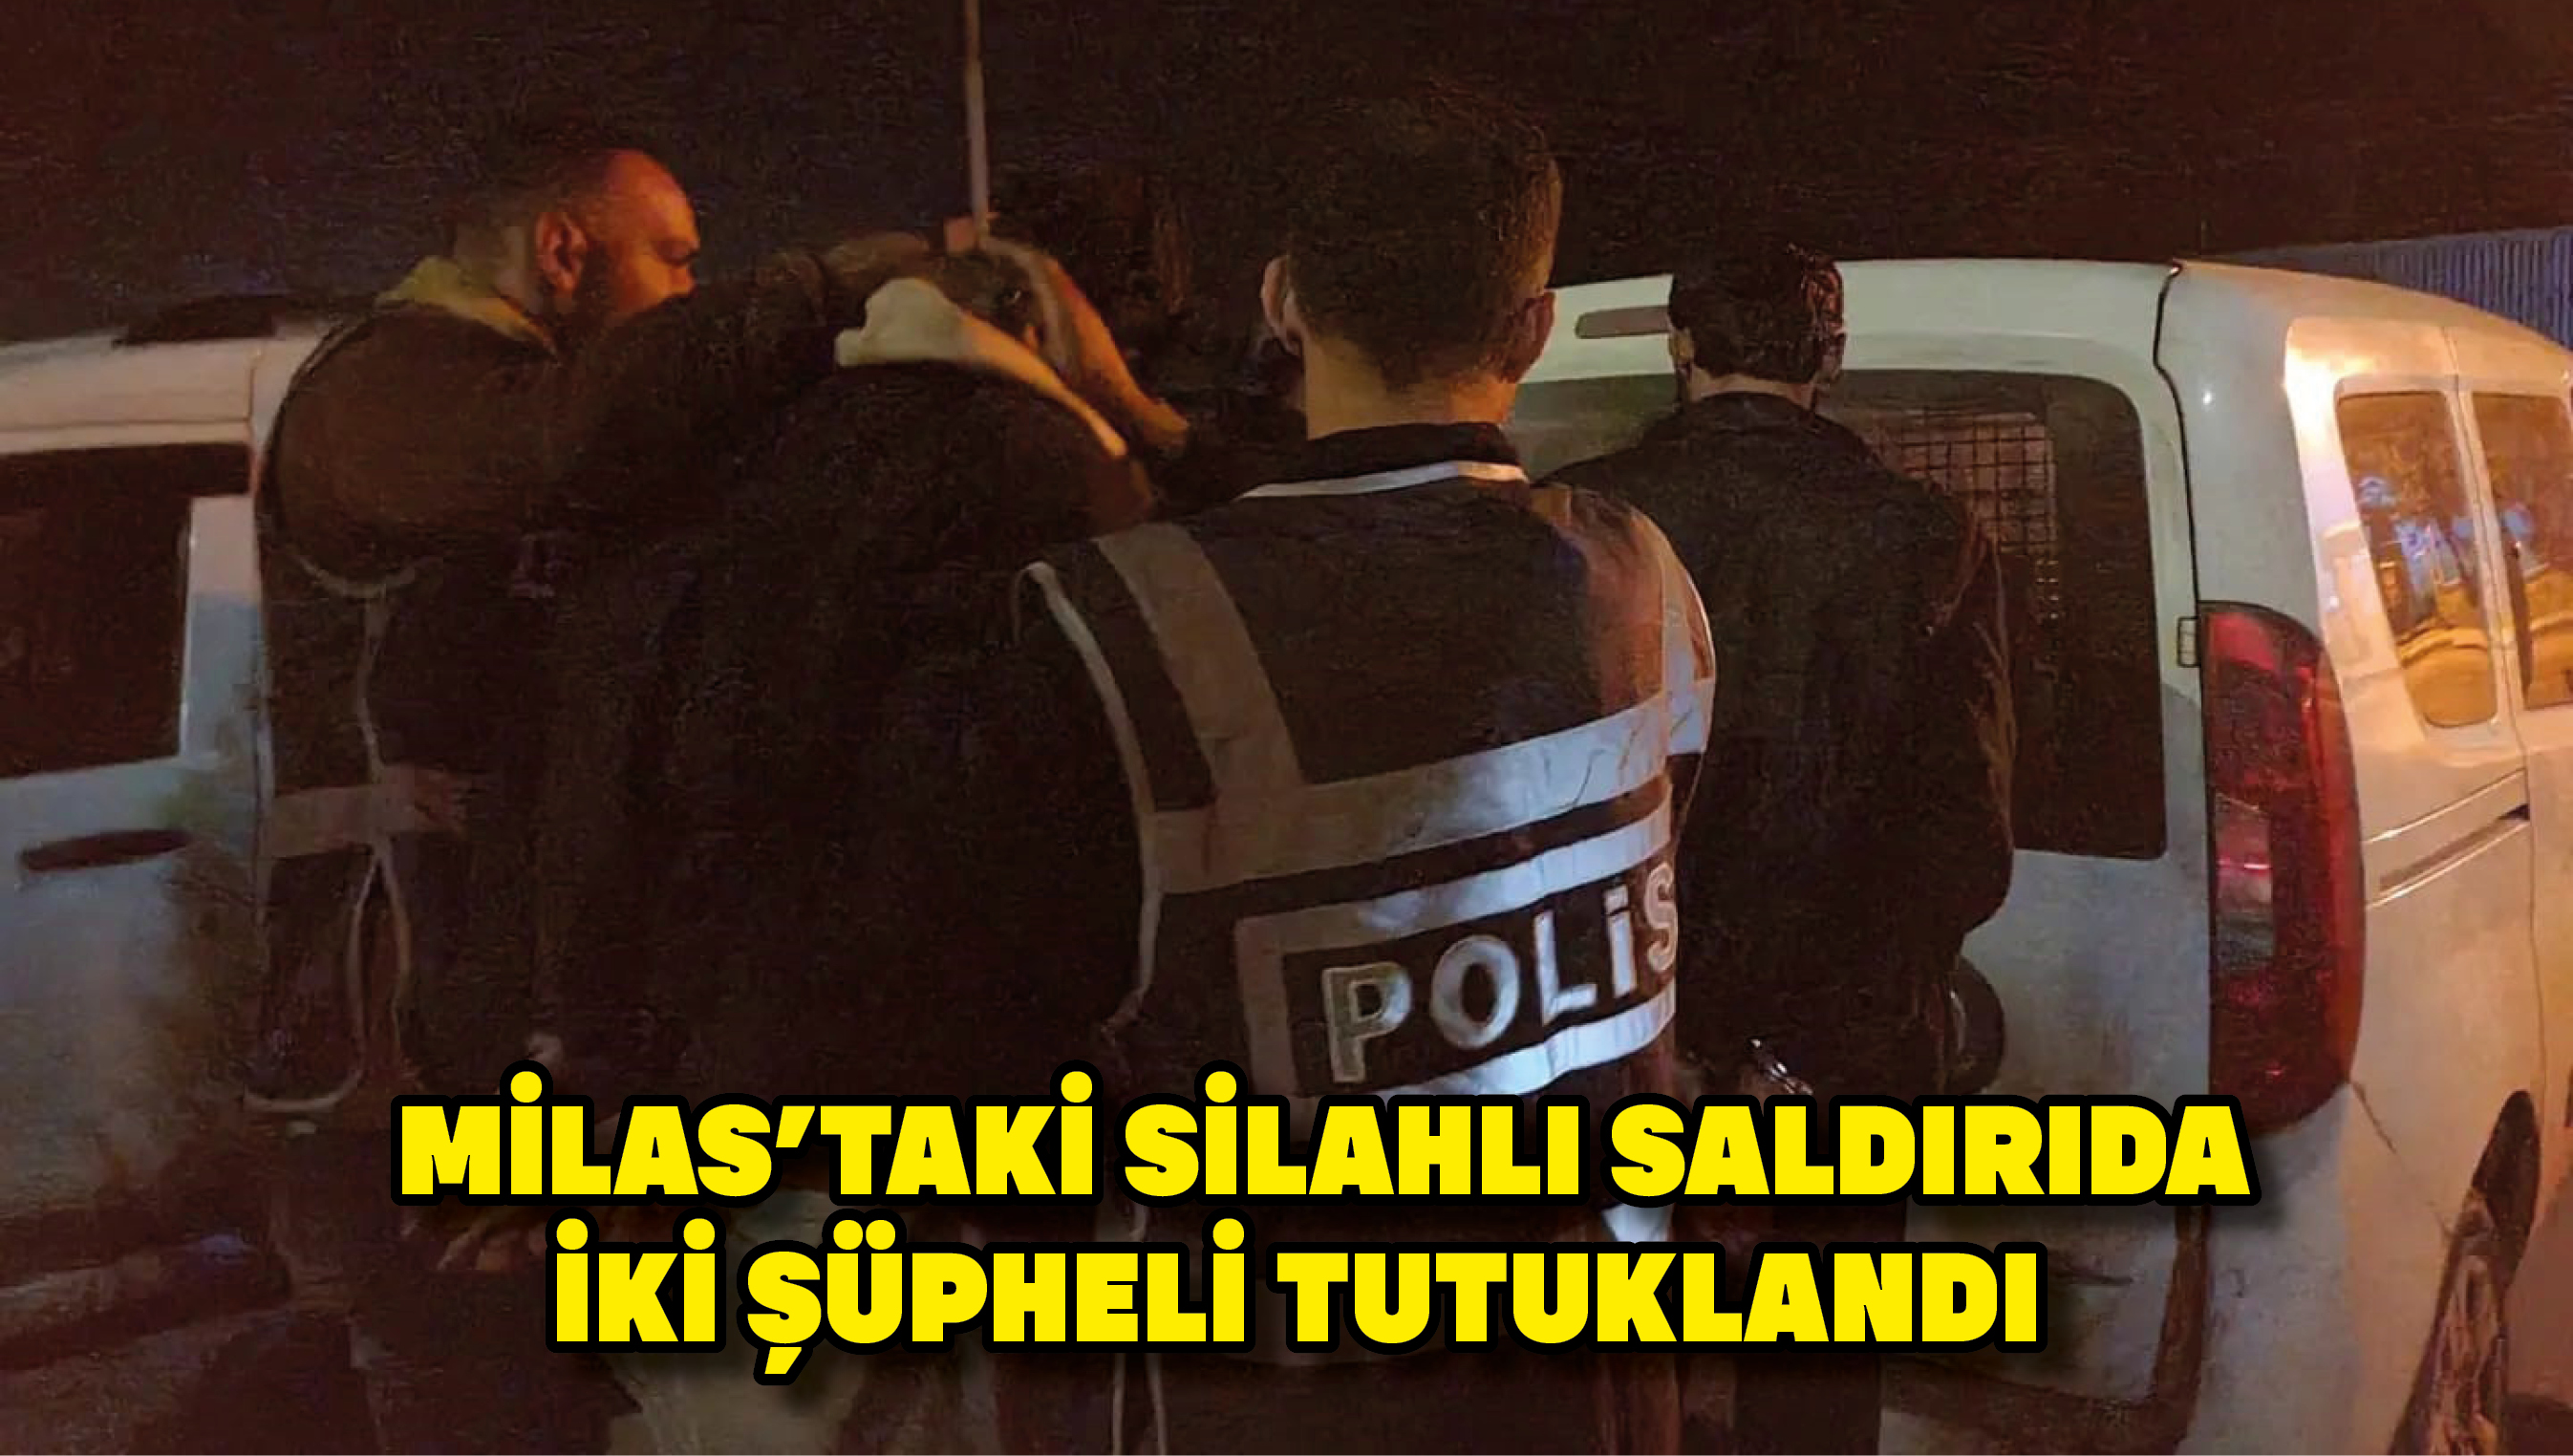 Milas'taki silahlı saldırıda iki şüpheli tutuklandı